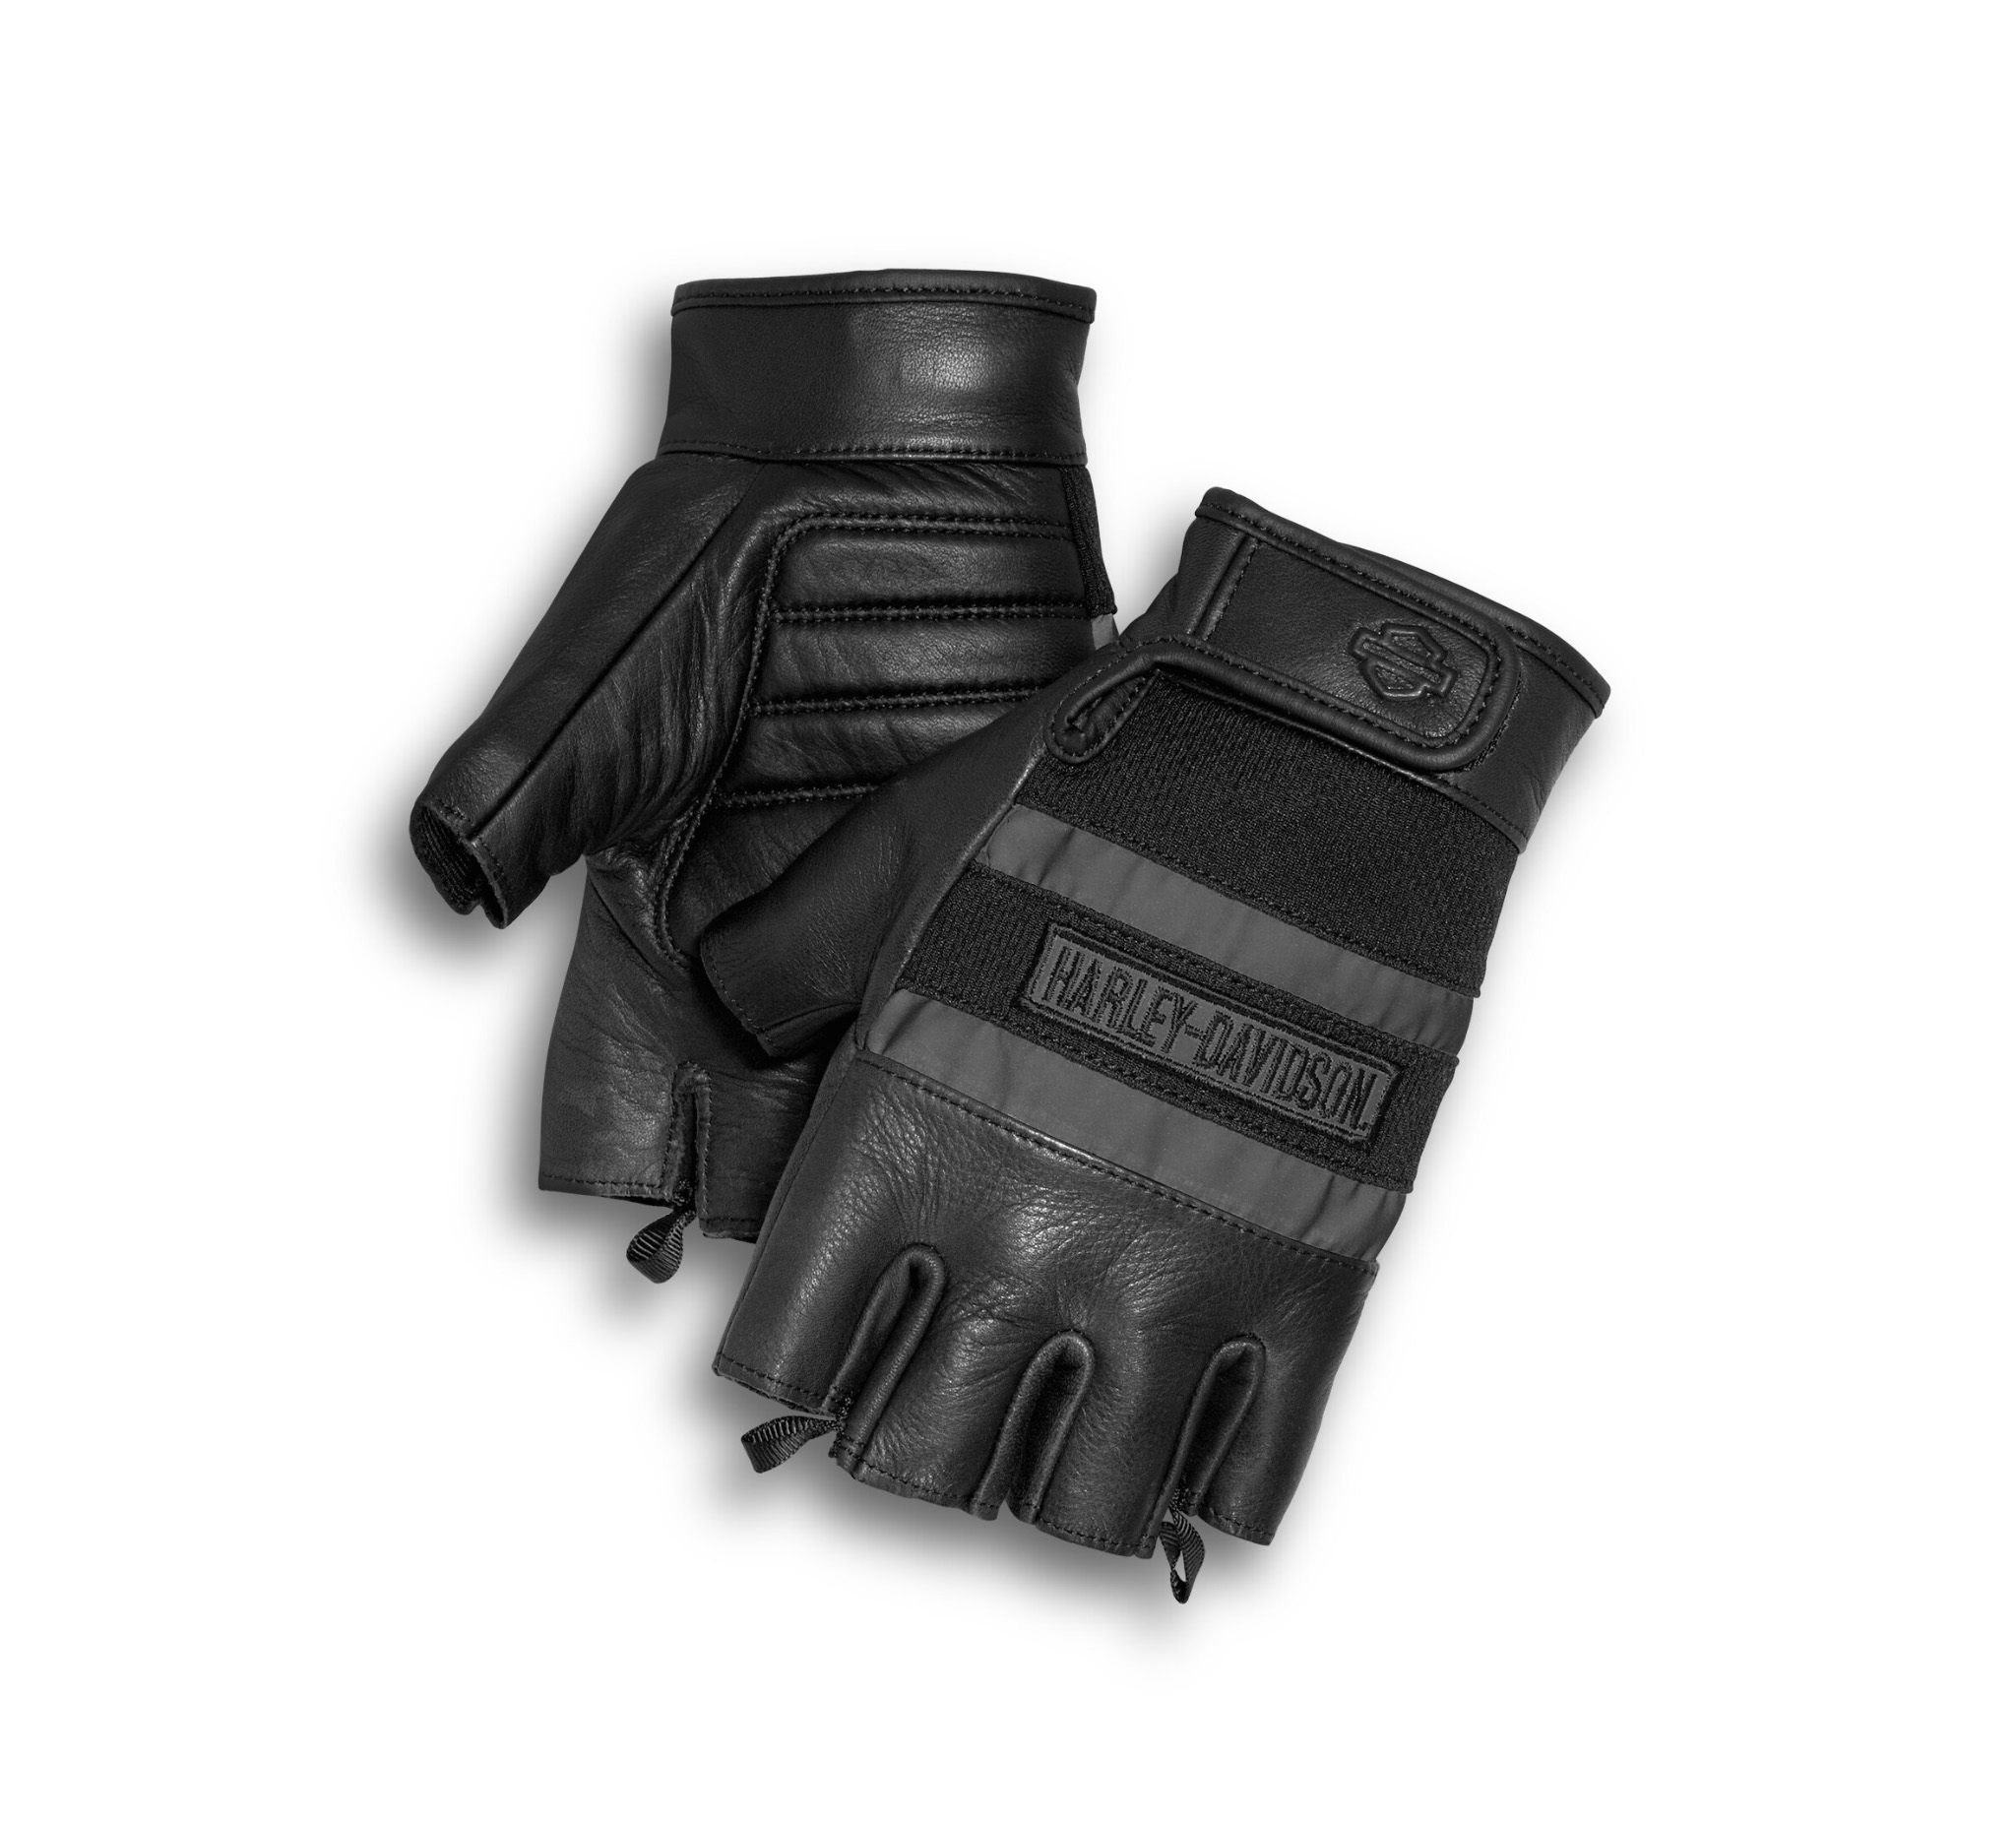 Harley Davidson Gloves For Sale Promotions